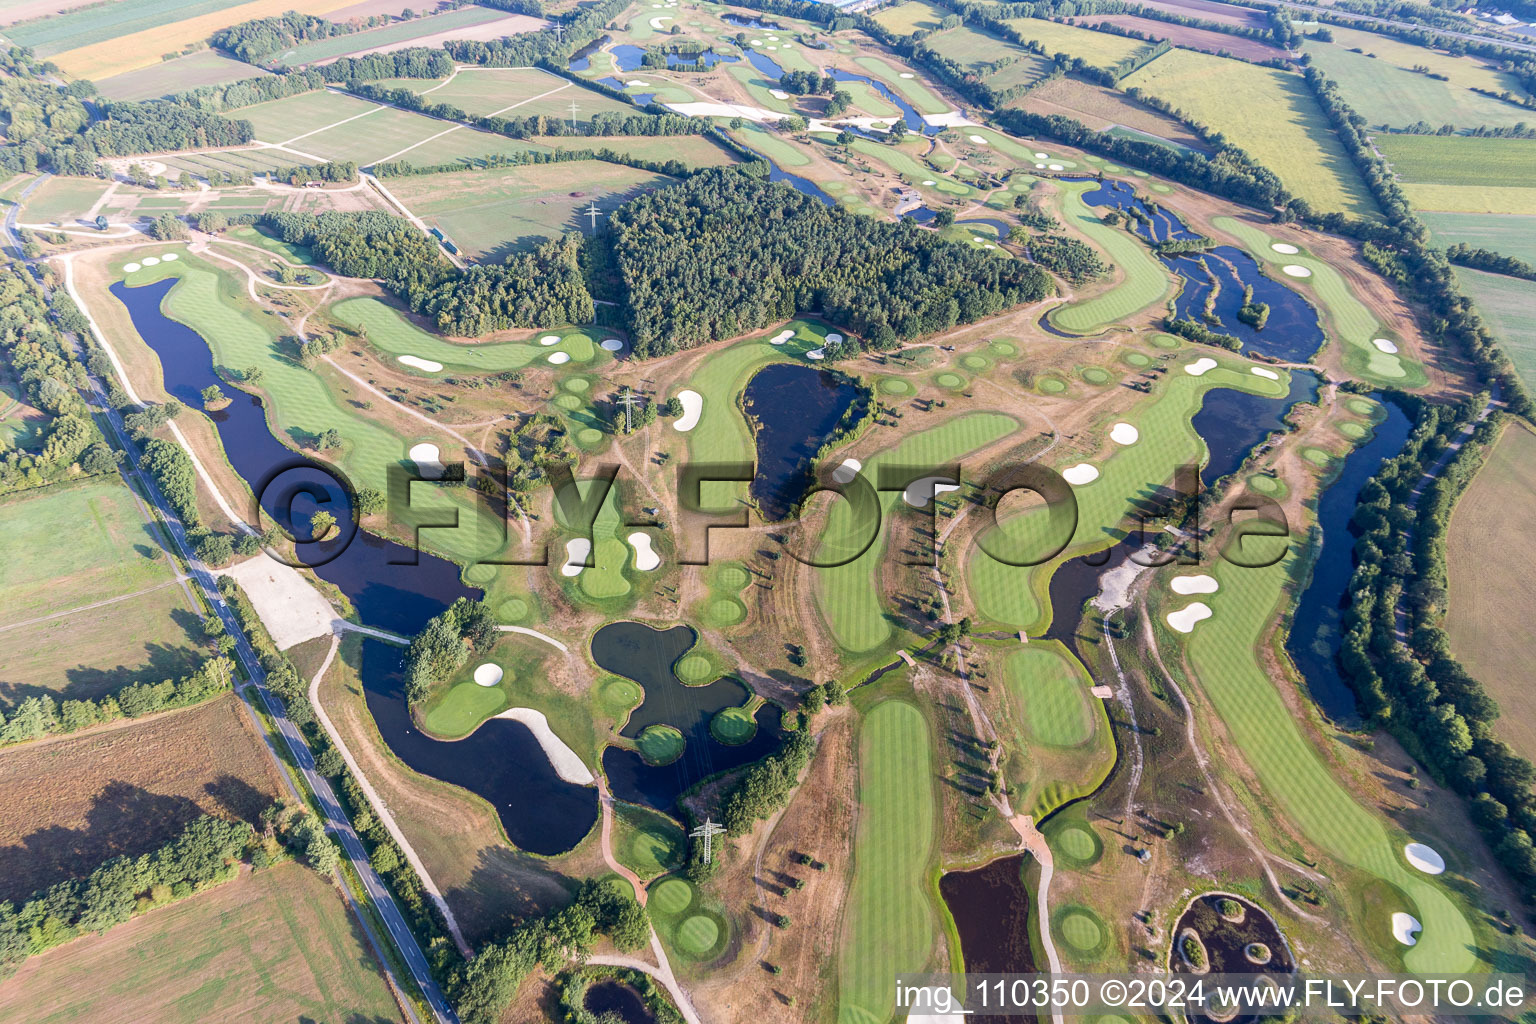 Terrain du parcours de golf Green Eagle à Winsen (Luhe) dans le département Basse-Saxe, Allemagne vue d'en haut